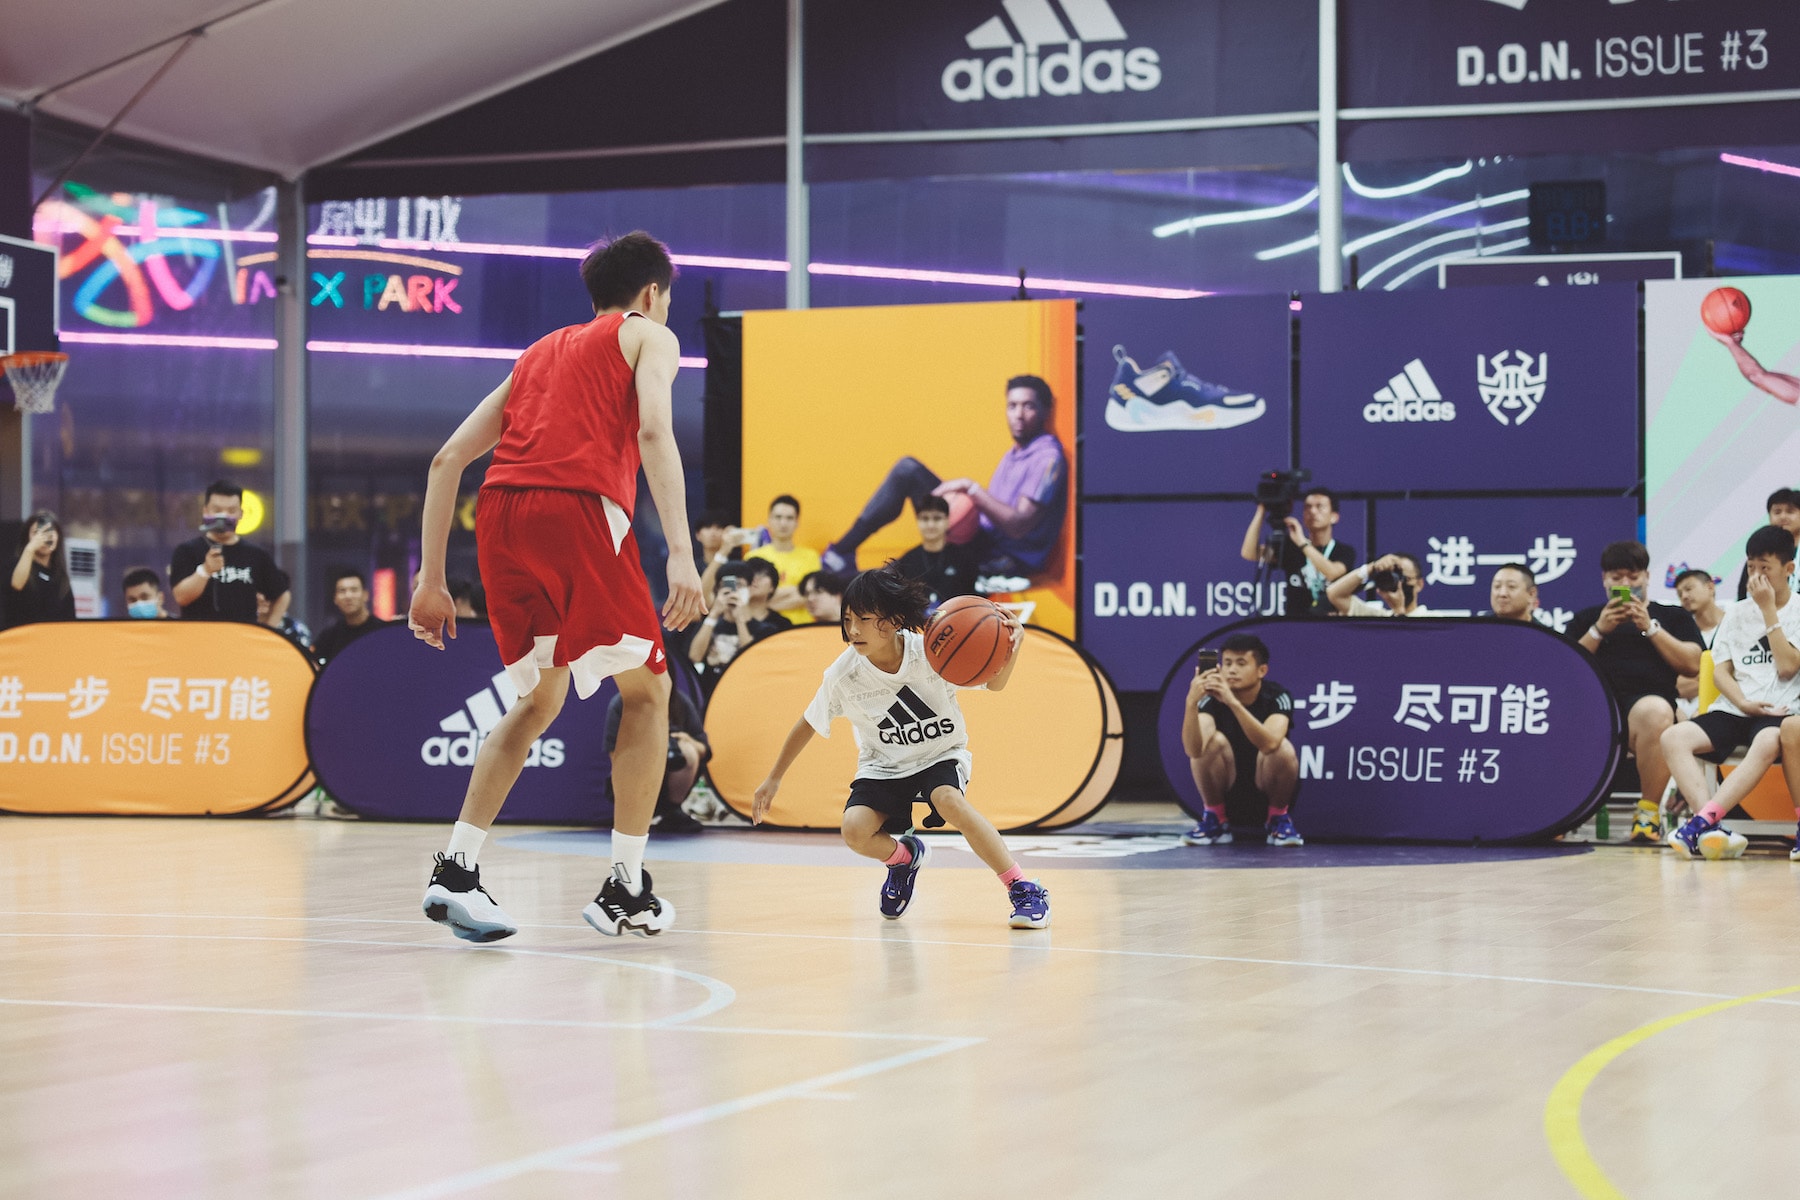 2021 adidas 篮球训练营 & 破限挑战总决赛活动回顾